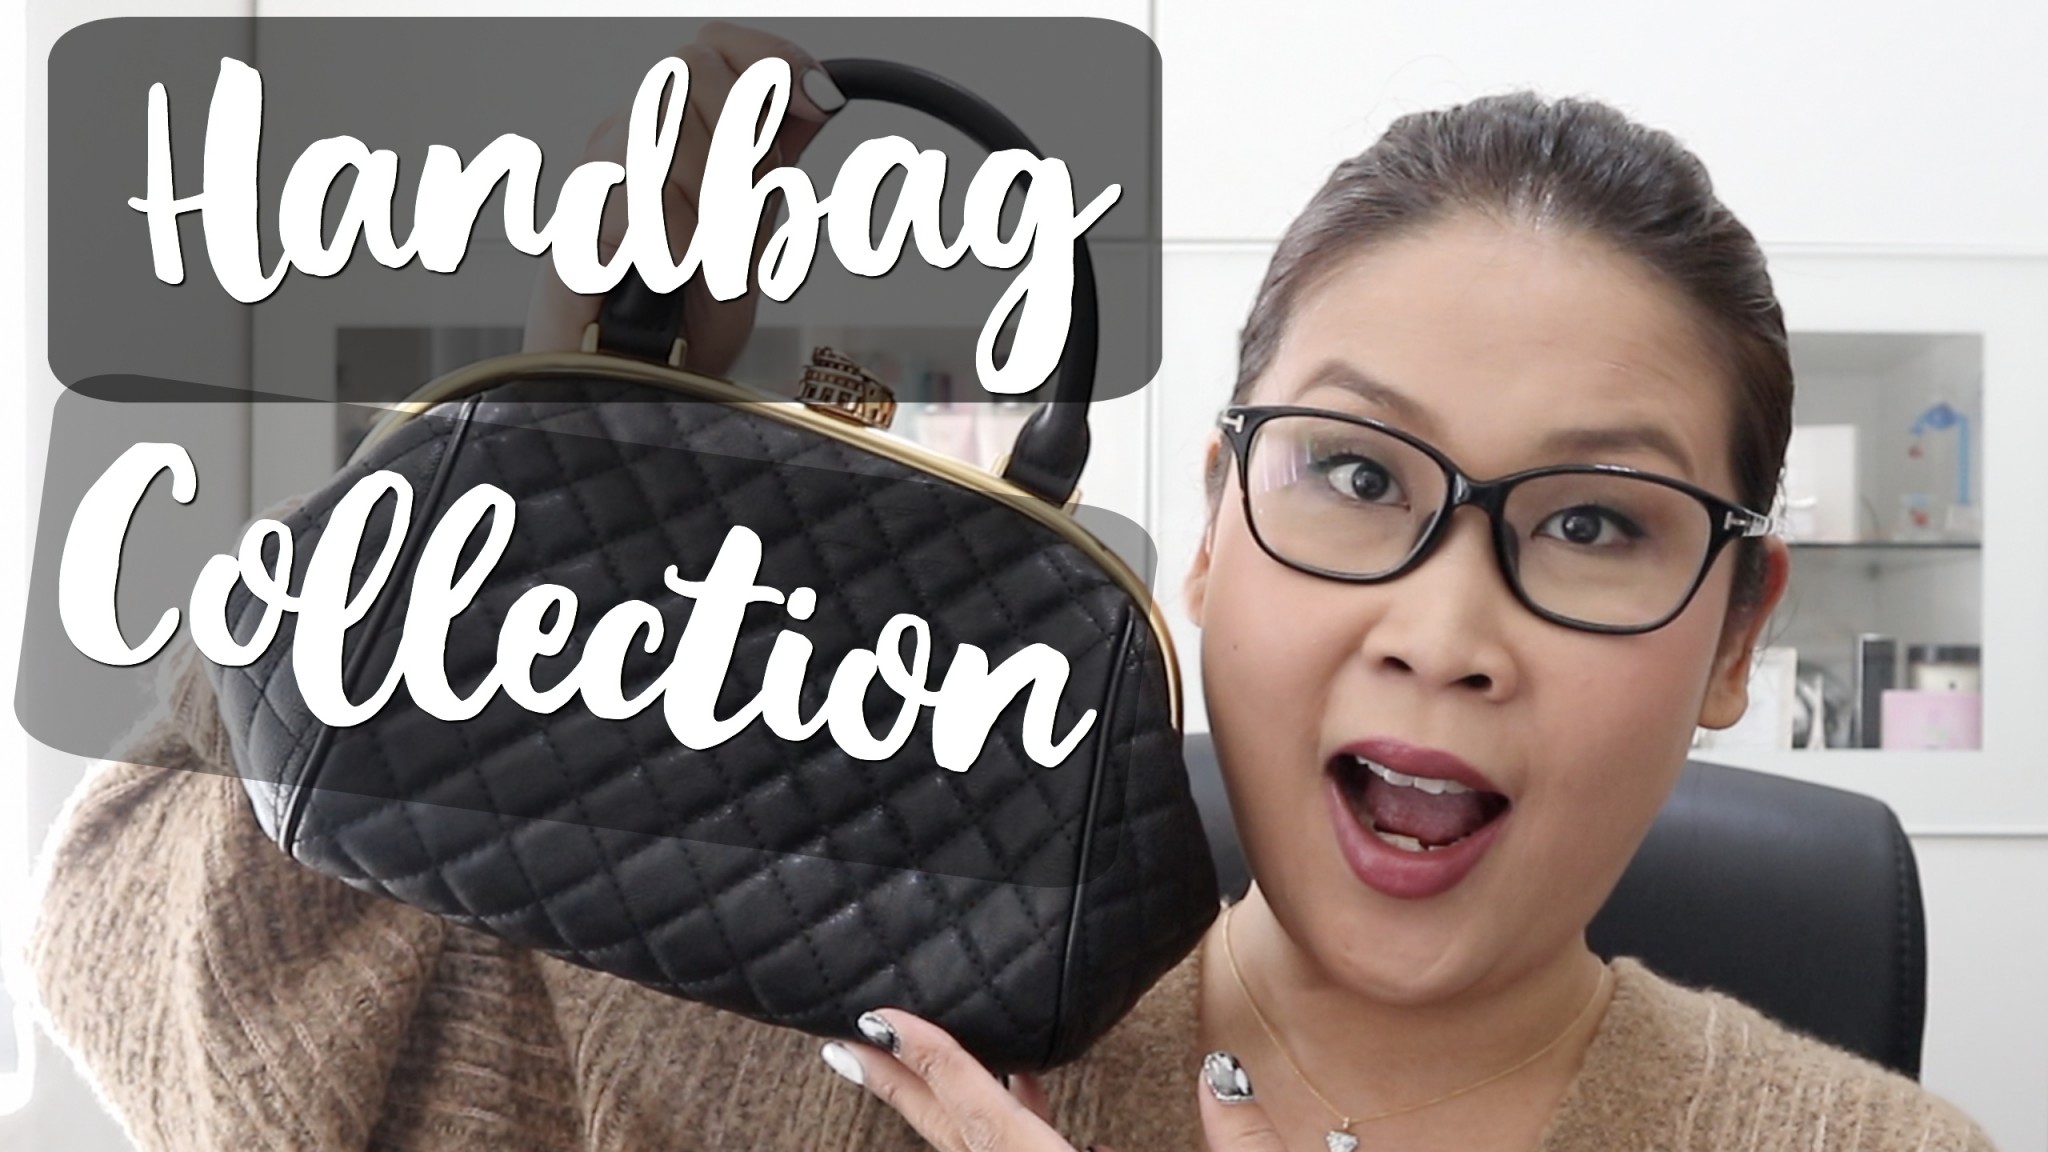 Handbag Collection 2017 手袋包包合集